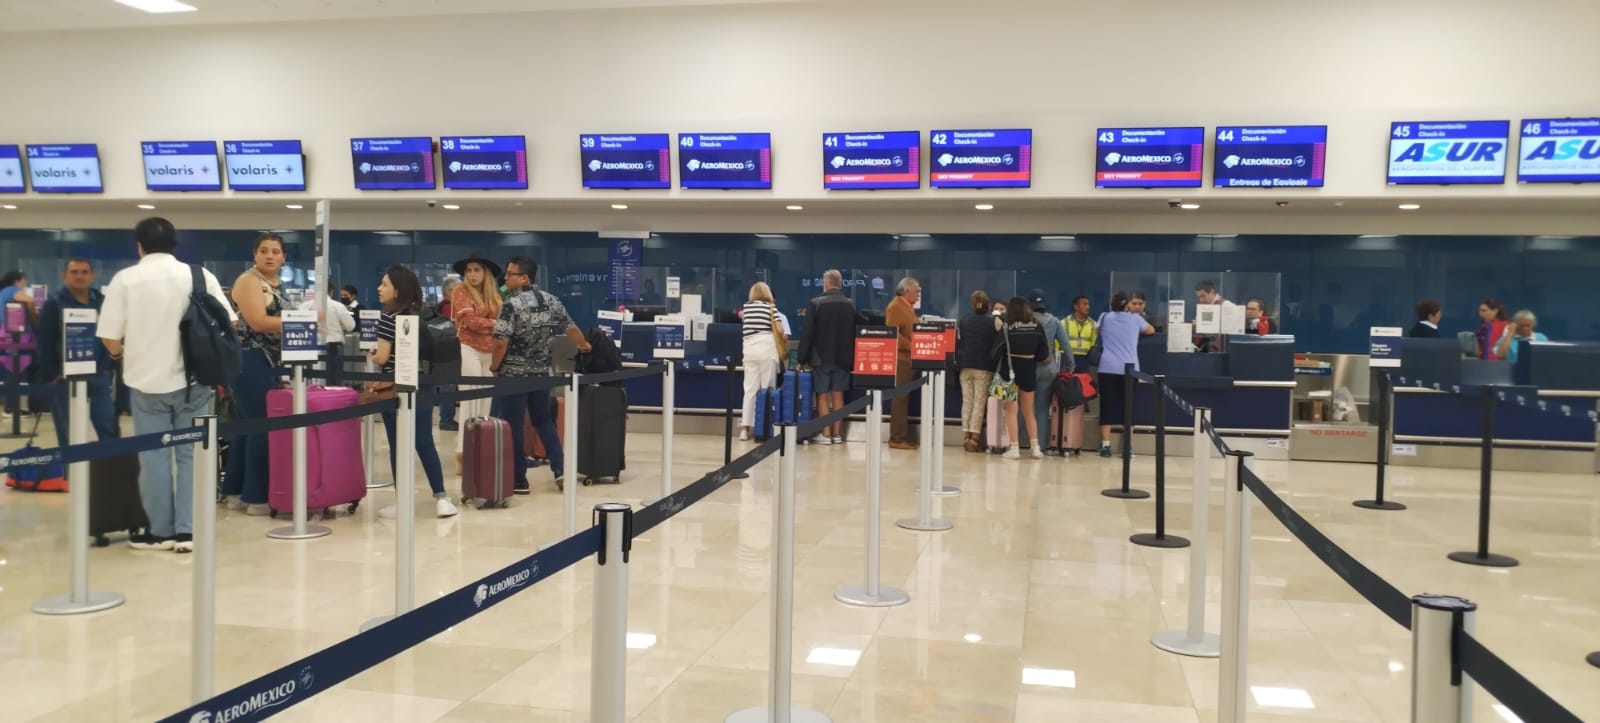 El vuelo de Aeroméxico fue el único afectado en el aeropuerto de Mérida